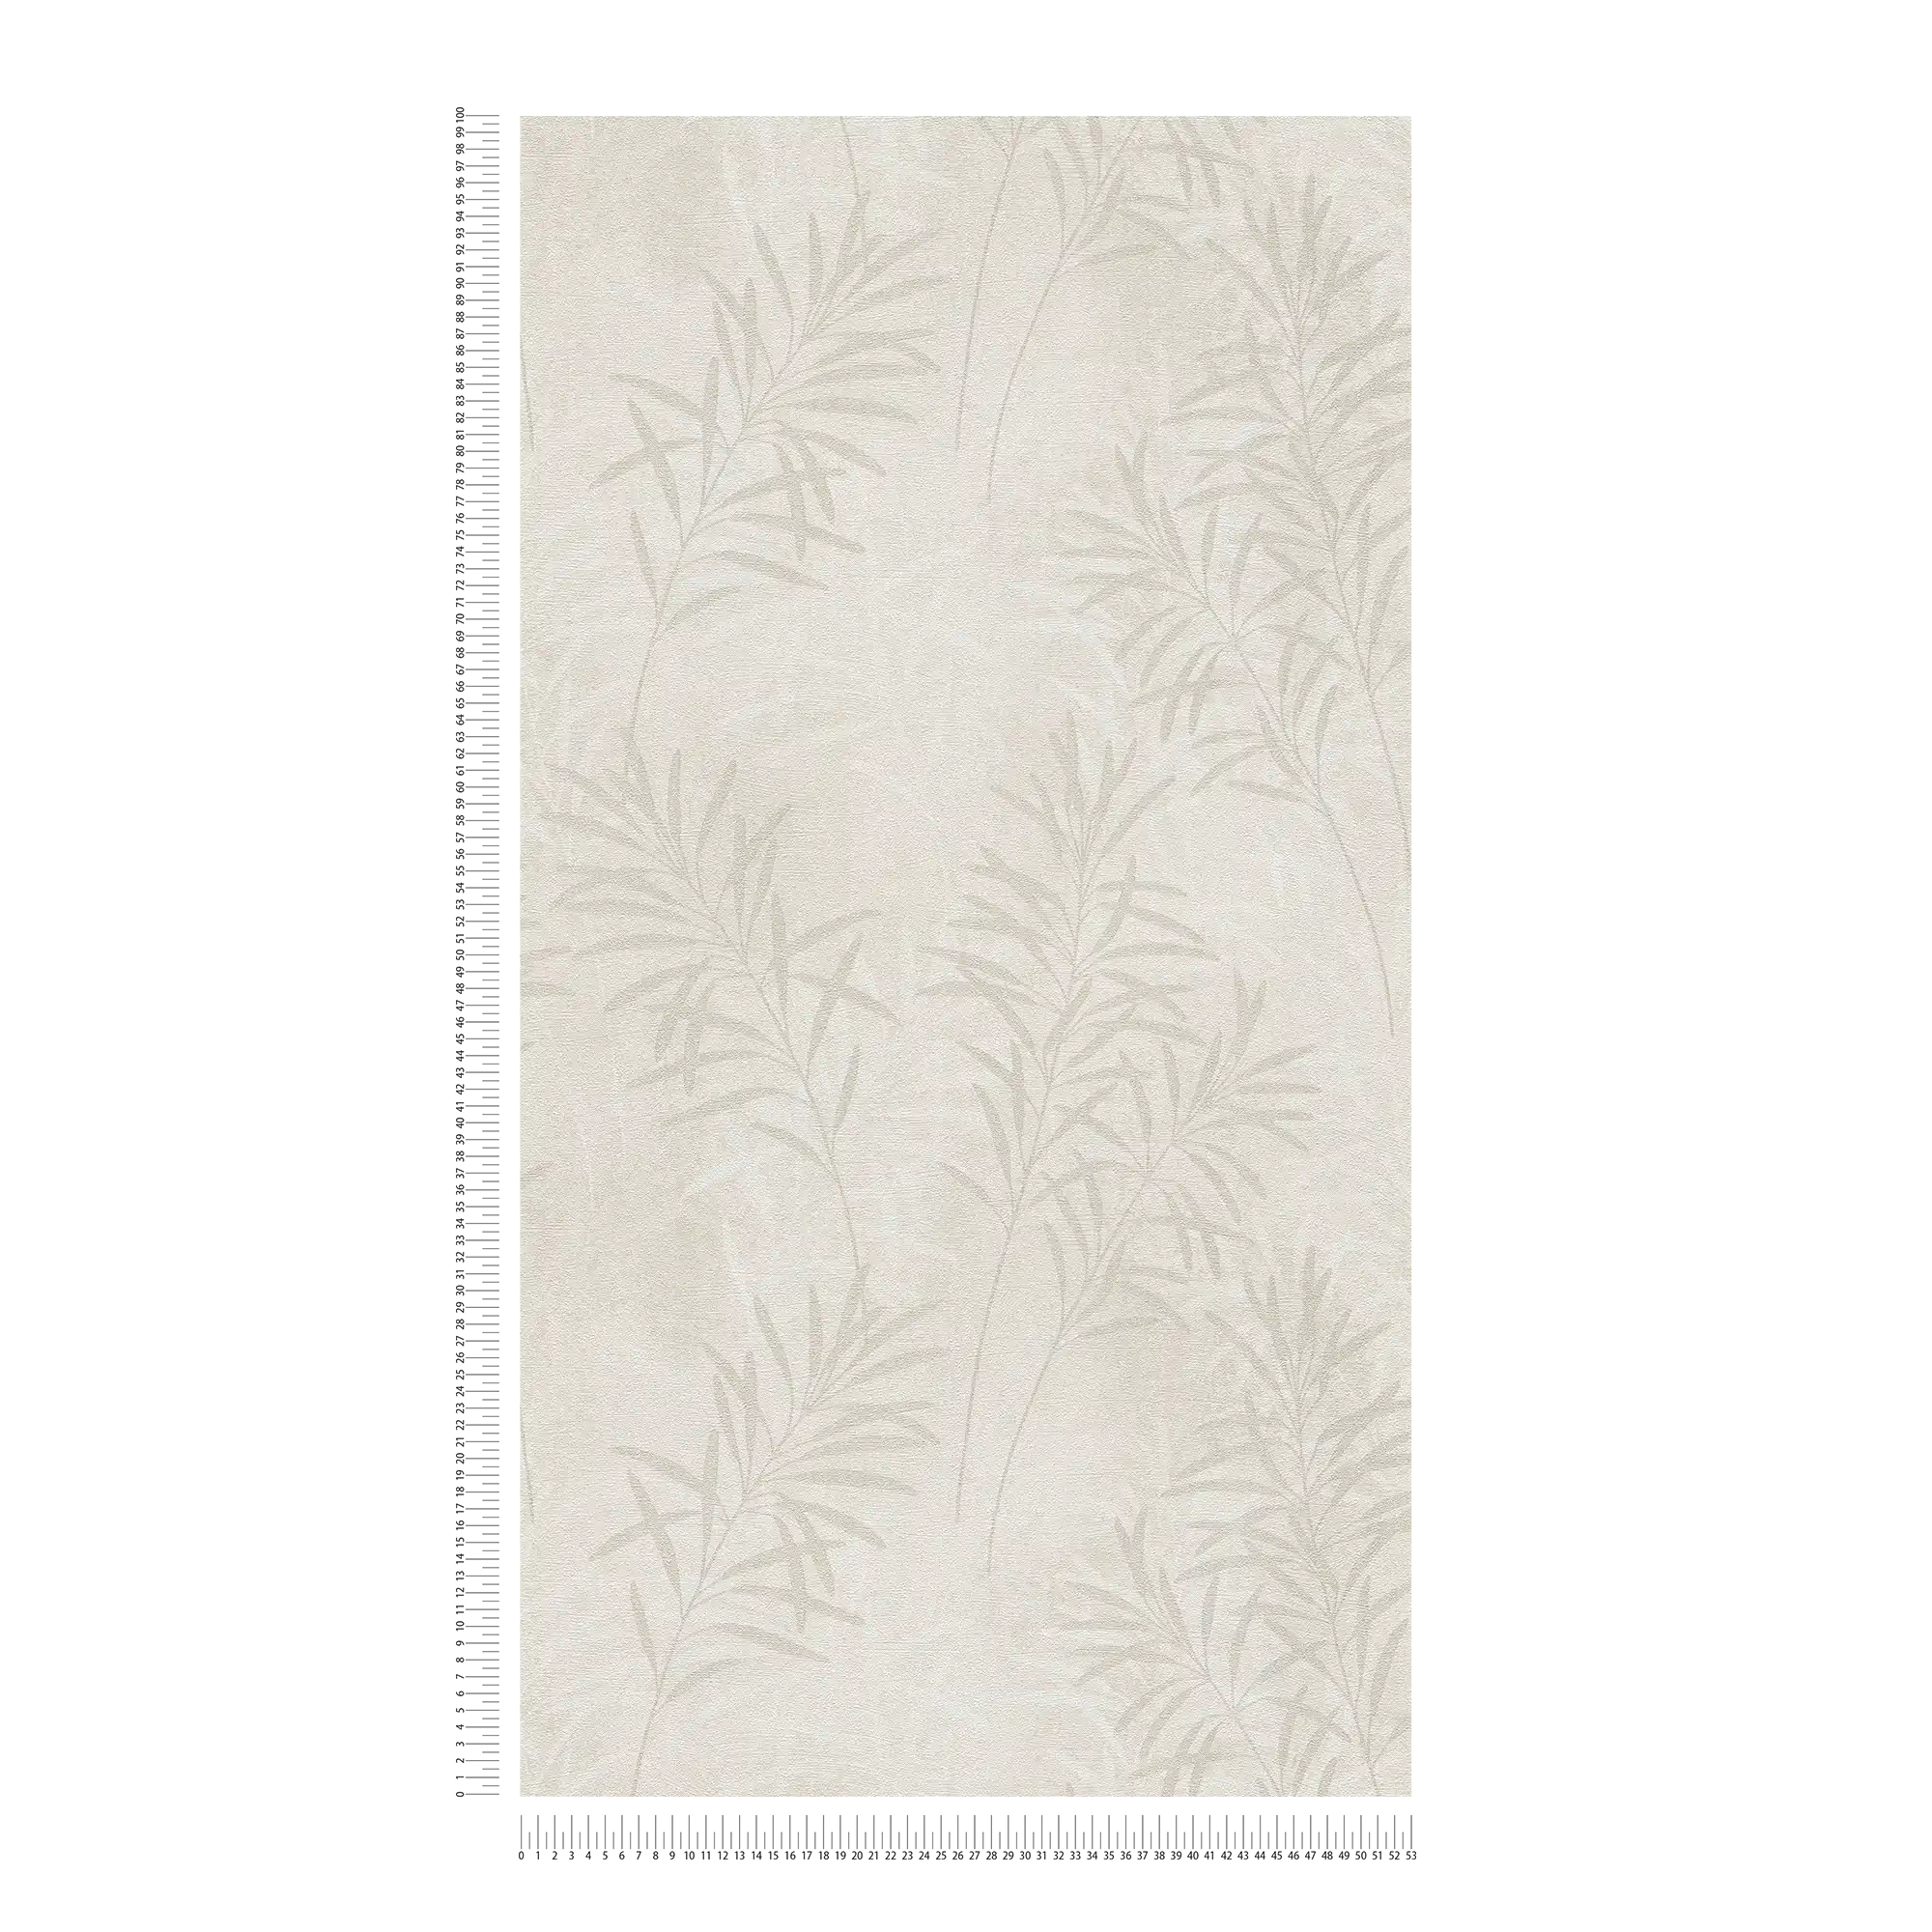             Scandinavian Style papier peint intissé avec des herbes florales - crème, beige, métallique
        